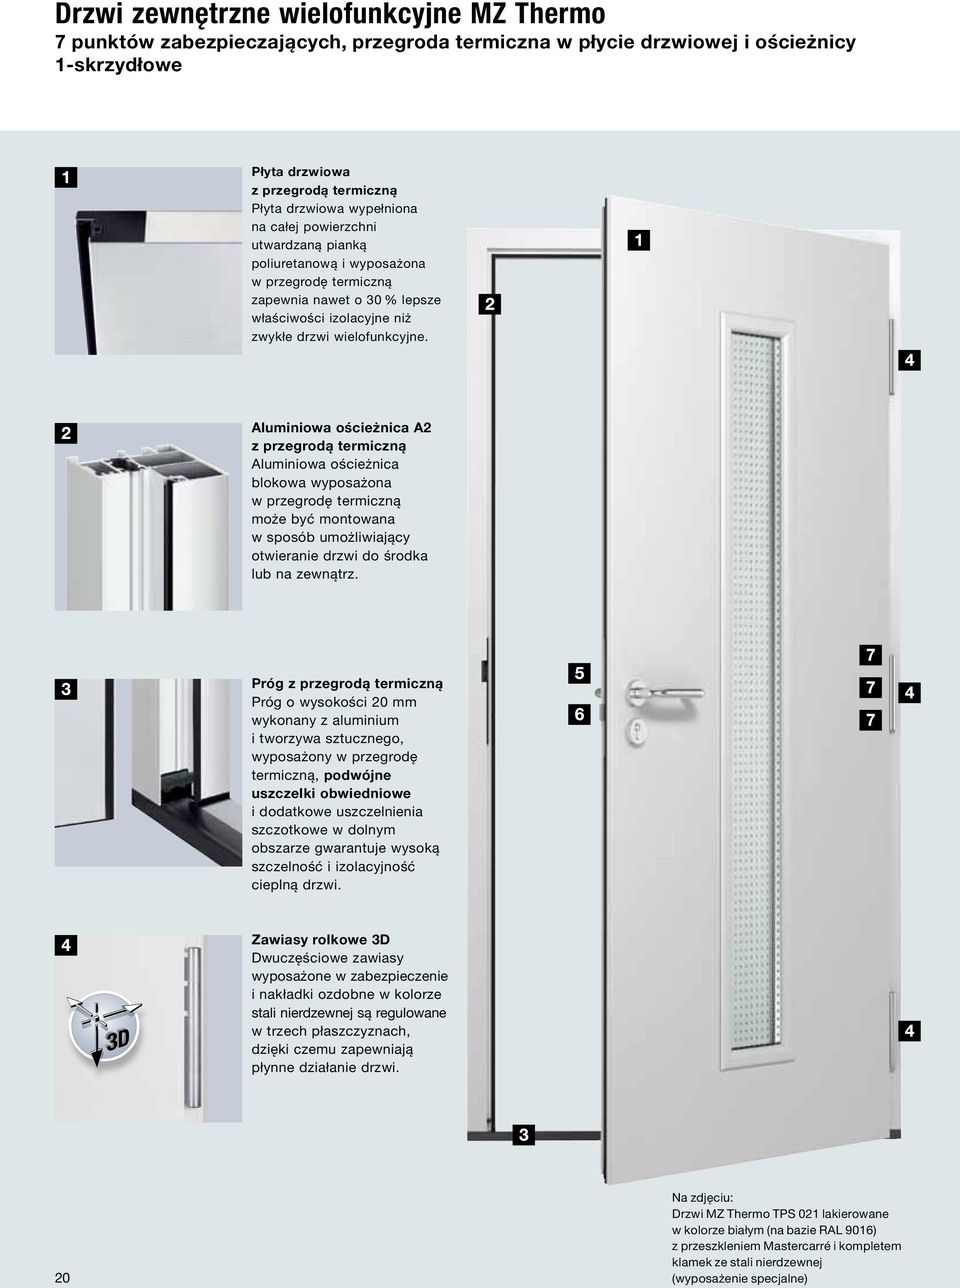 Aluminiowa ościeżnica A2 z przegrodą termiczną Aluminiowa ościeżnica blokowa wyposażona w przegrodę termiczną może być montowana w sposób umożliwiający otwieranie drzwi do środka lub na zewnątrz.